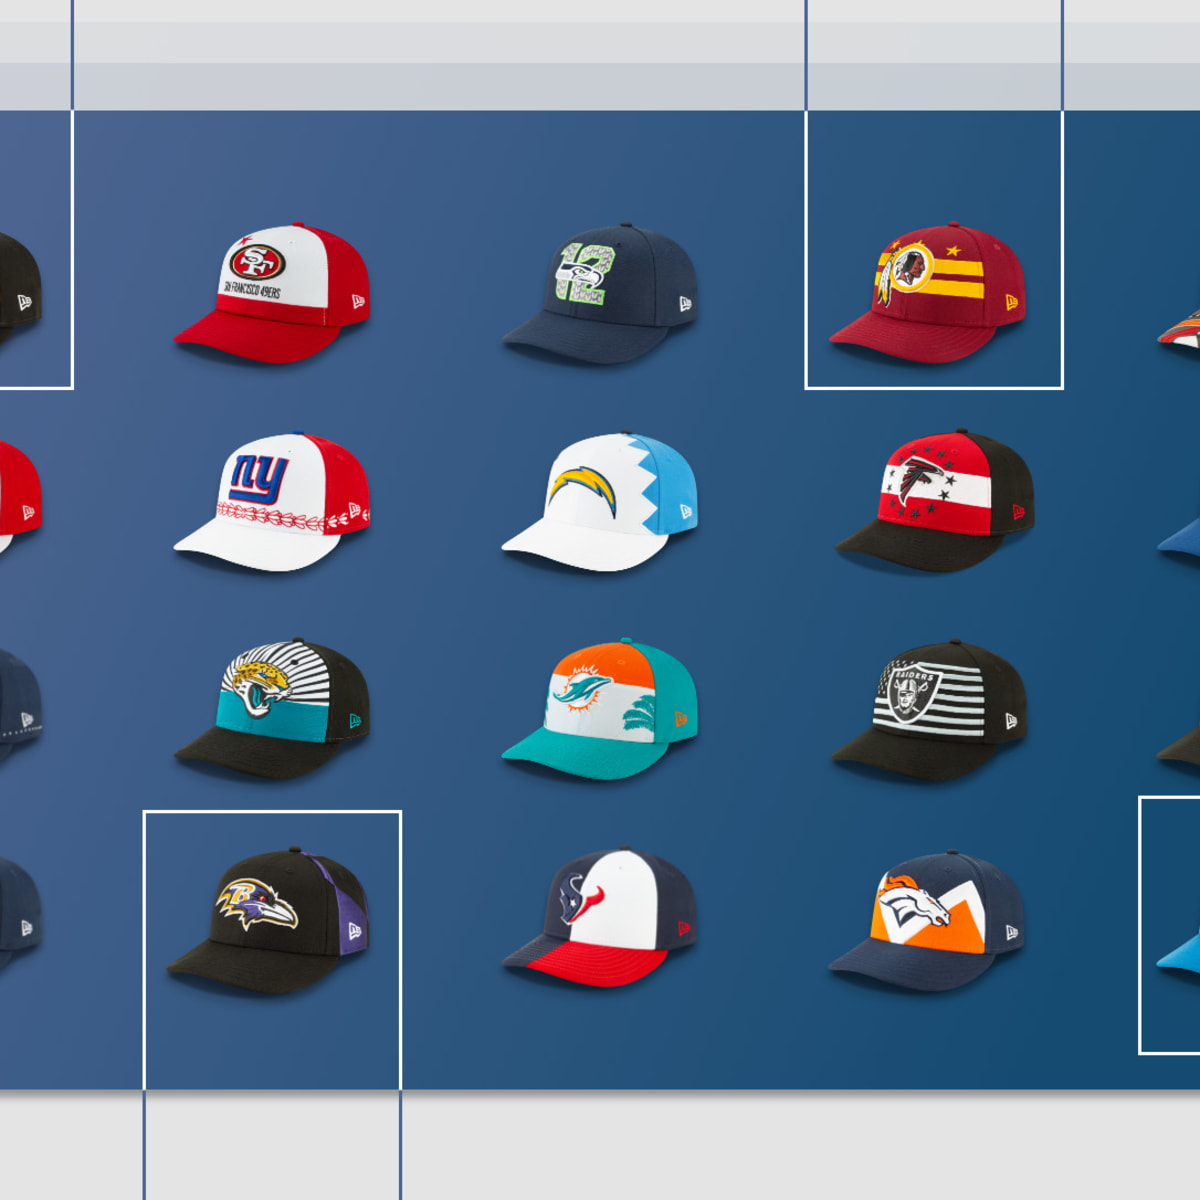 Official NBA, NFL, & Esports Snapback Hats